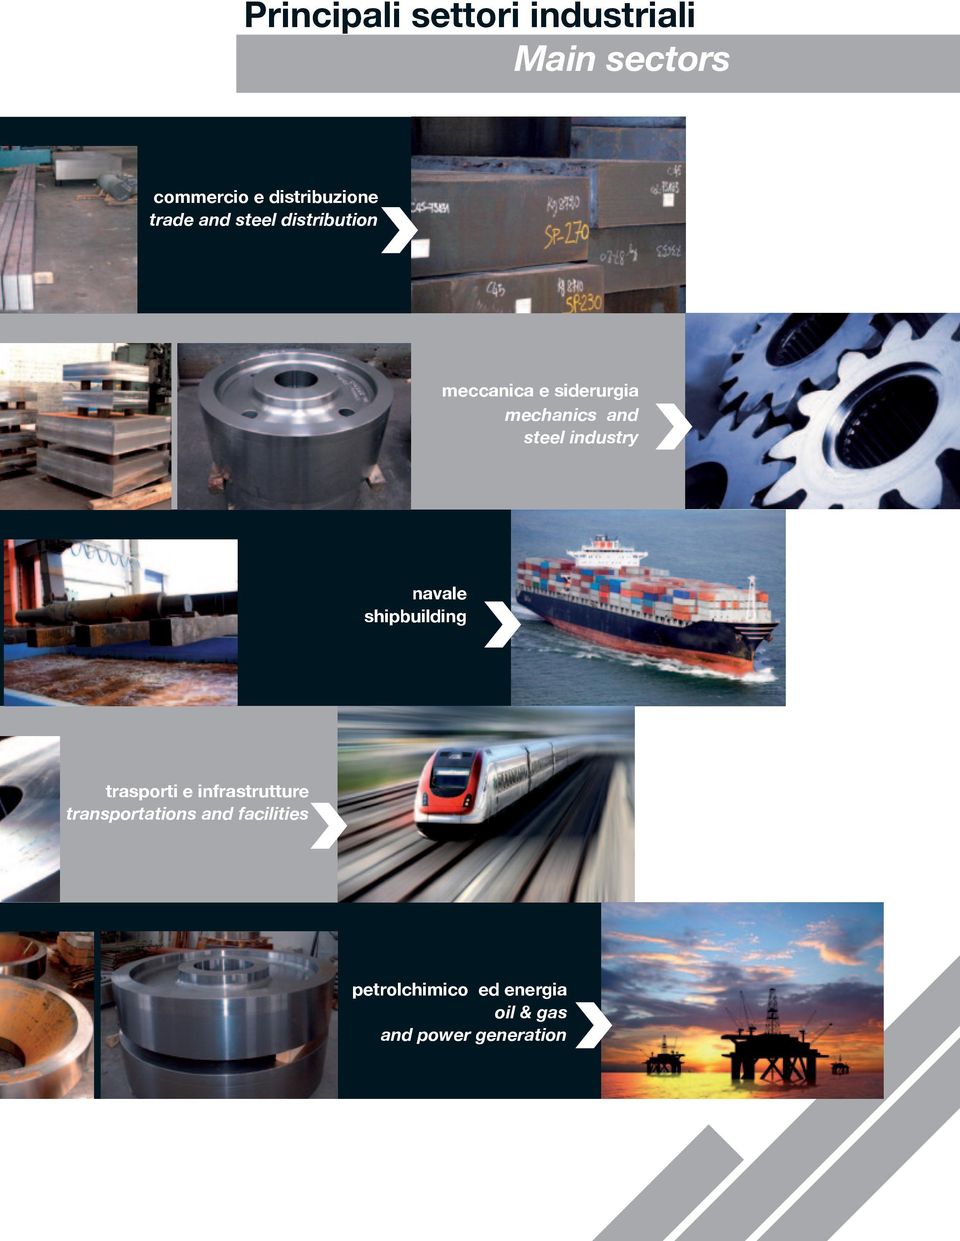 steel industry navale shipbuilding trasporti e infrastrutture